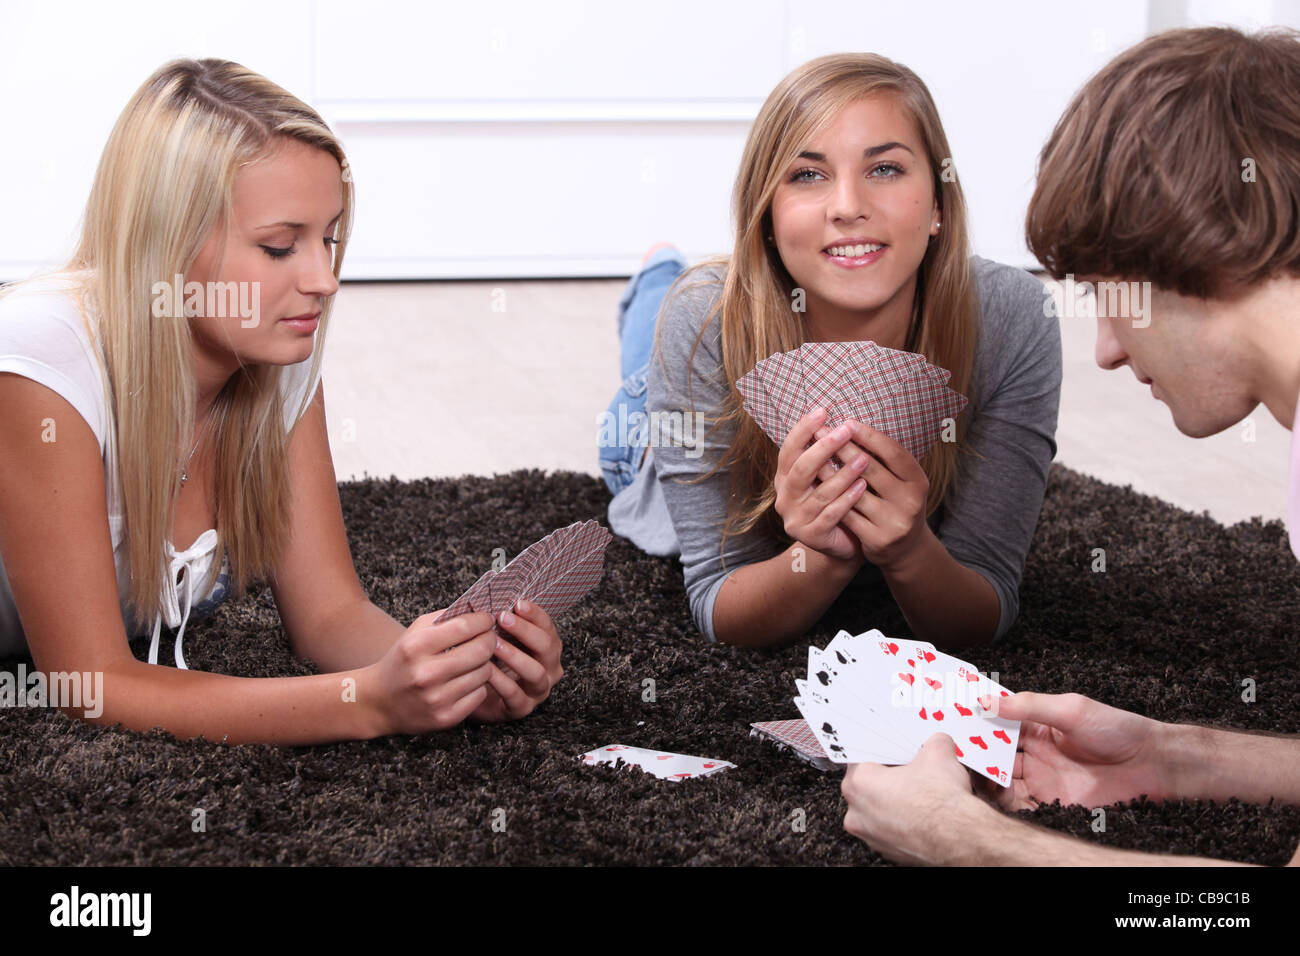 Игра на раздевание мальчик. Мальчик и девочка играют в карты. Девочки играют в карты. Девочки играют в карты на раздевание. Девушки играющие в карты.